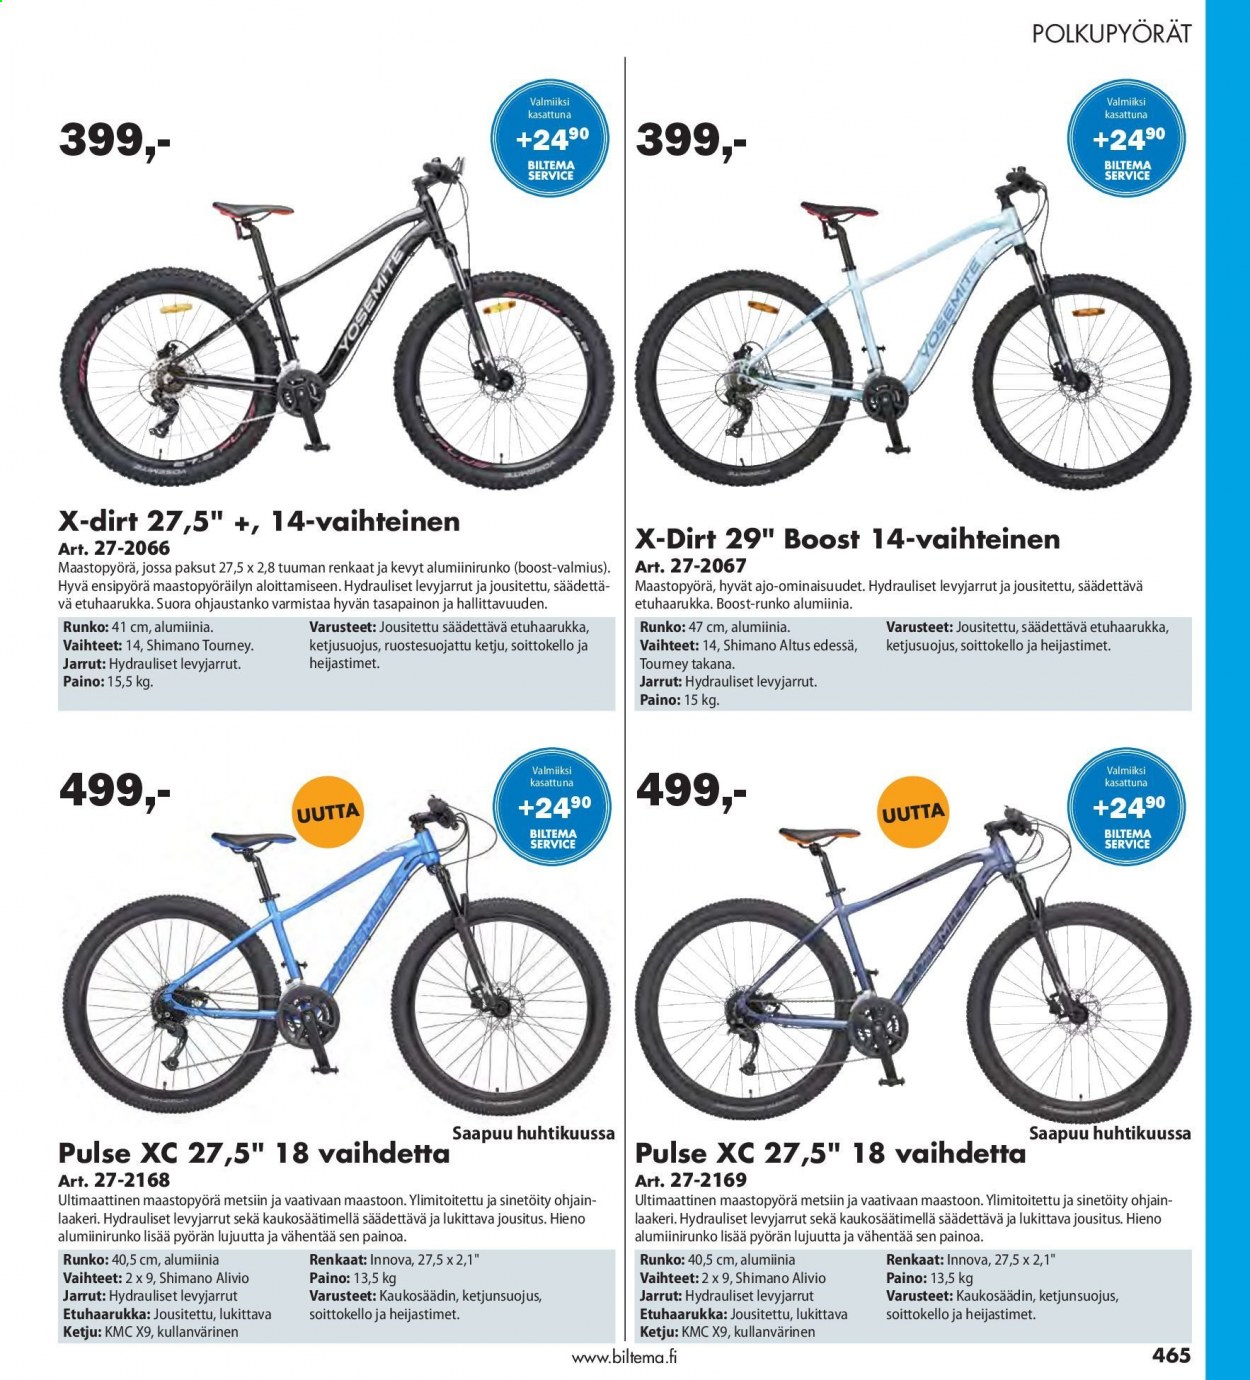 Biltema tarjoukset  - Tarjoustuotteet - innova, maastopyörä, polkupyörät, renkaat, shimano. Sivu 465.